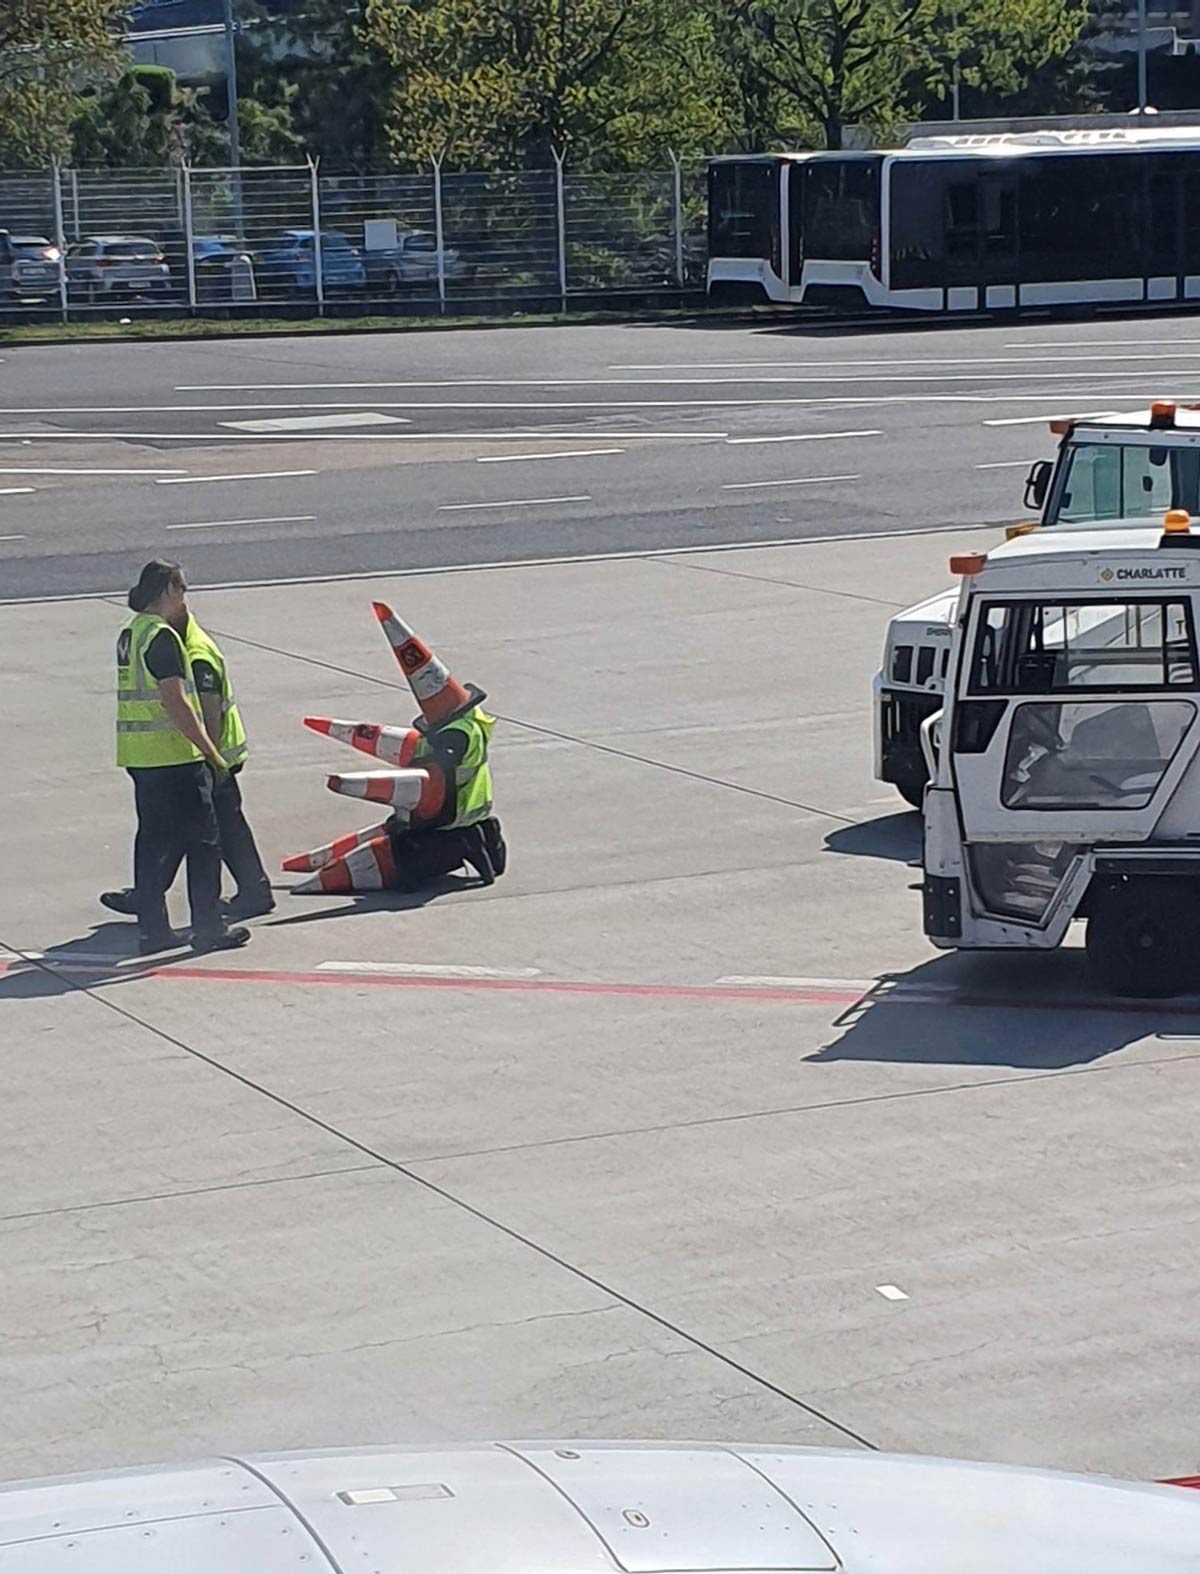 Workers at Prague airport having fun